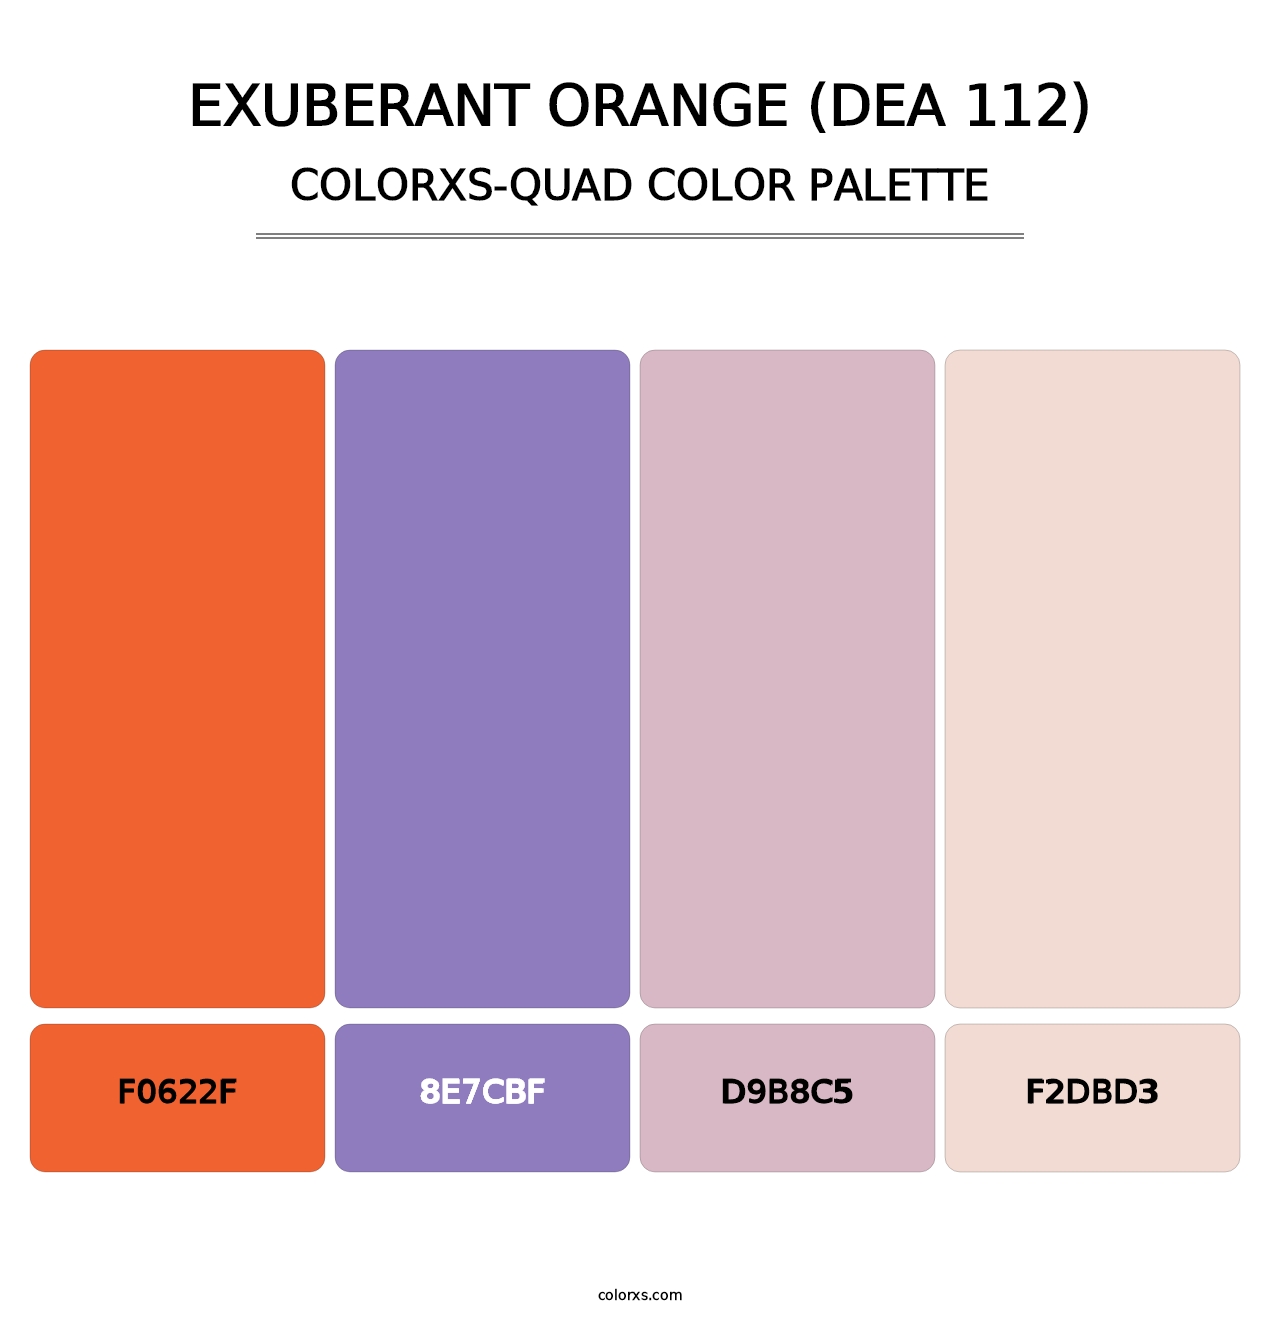 Exuberant Orange (DEA 112) - Colorxs Quad Palette